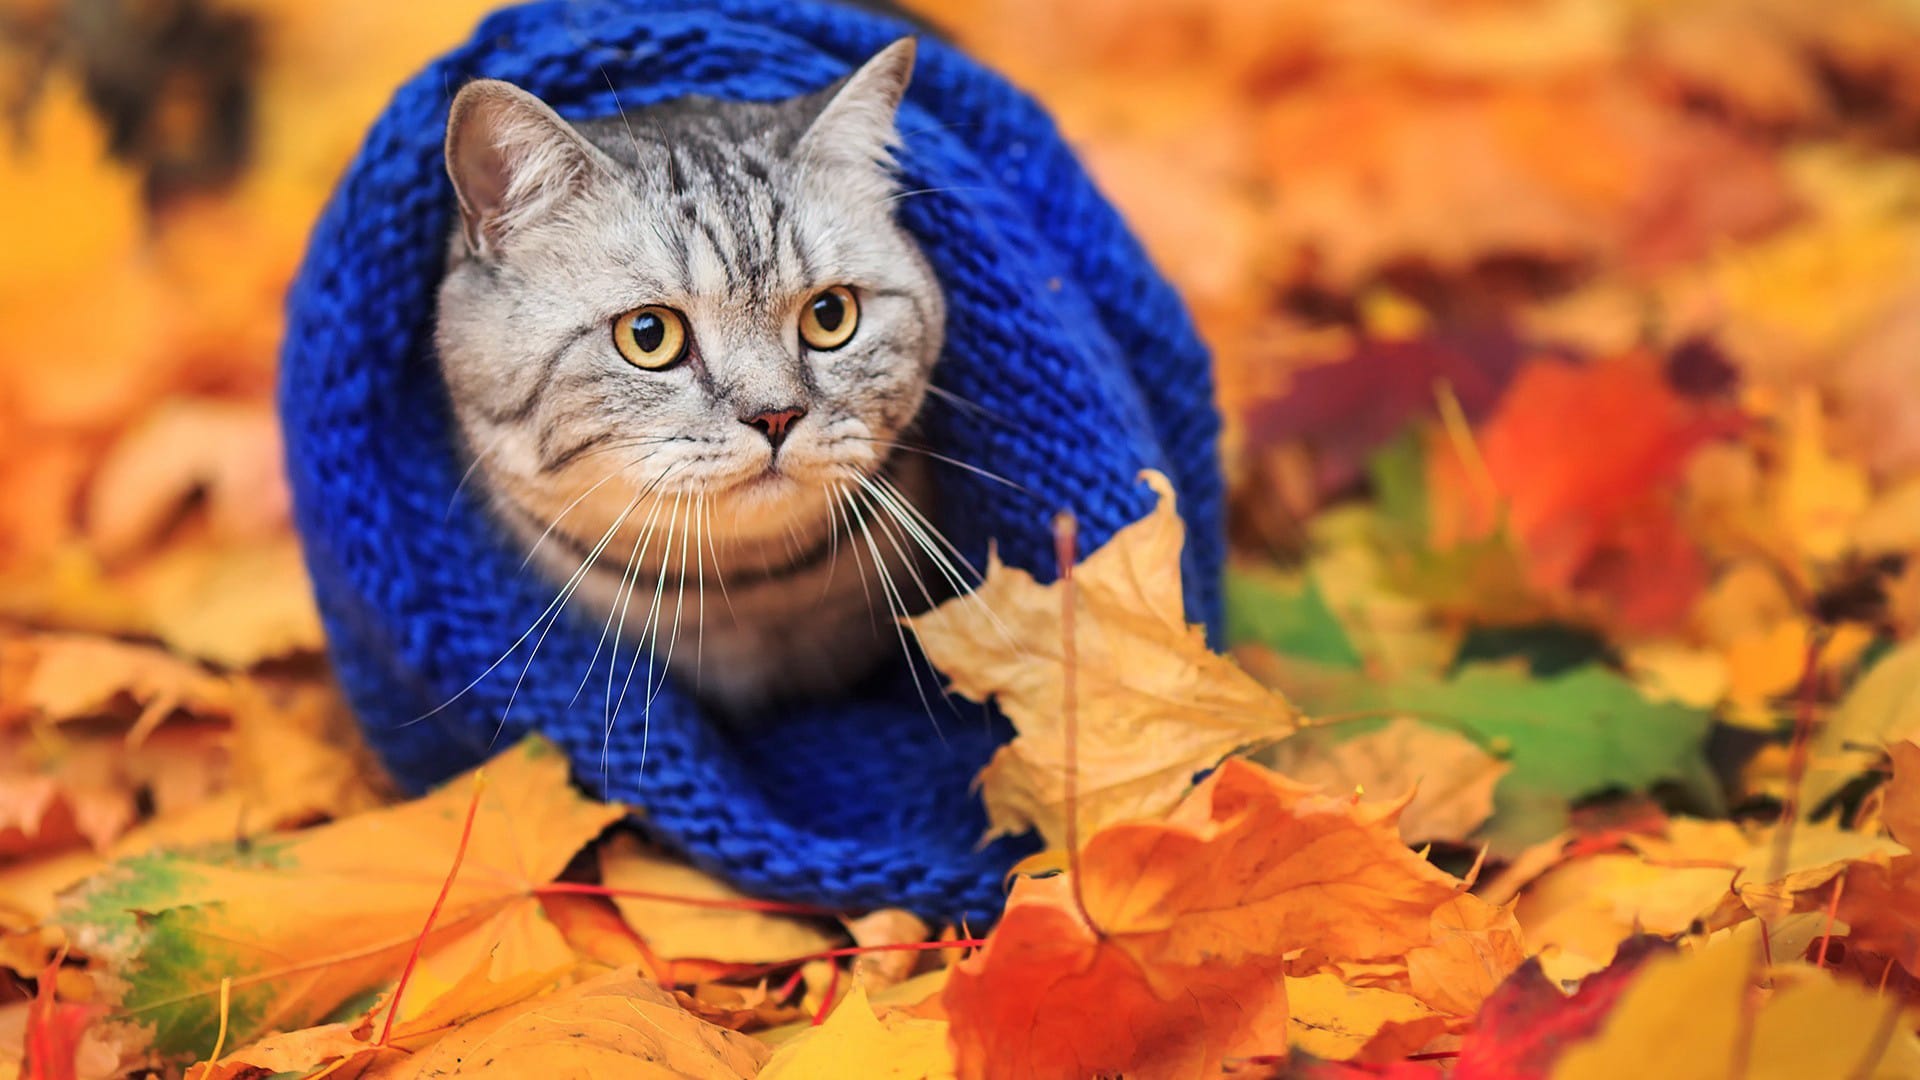 秋天落叶中的可爱小动物图片壁纸